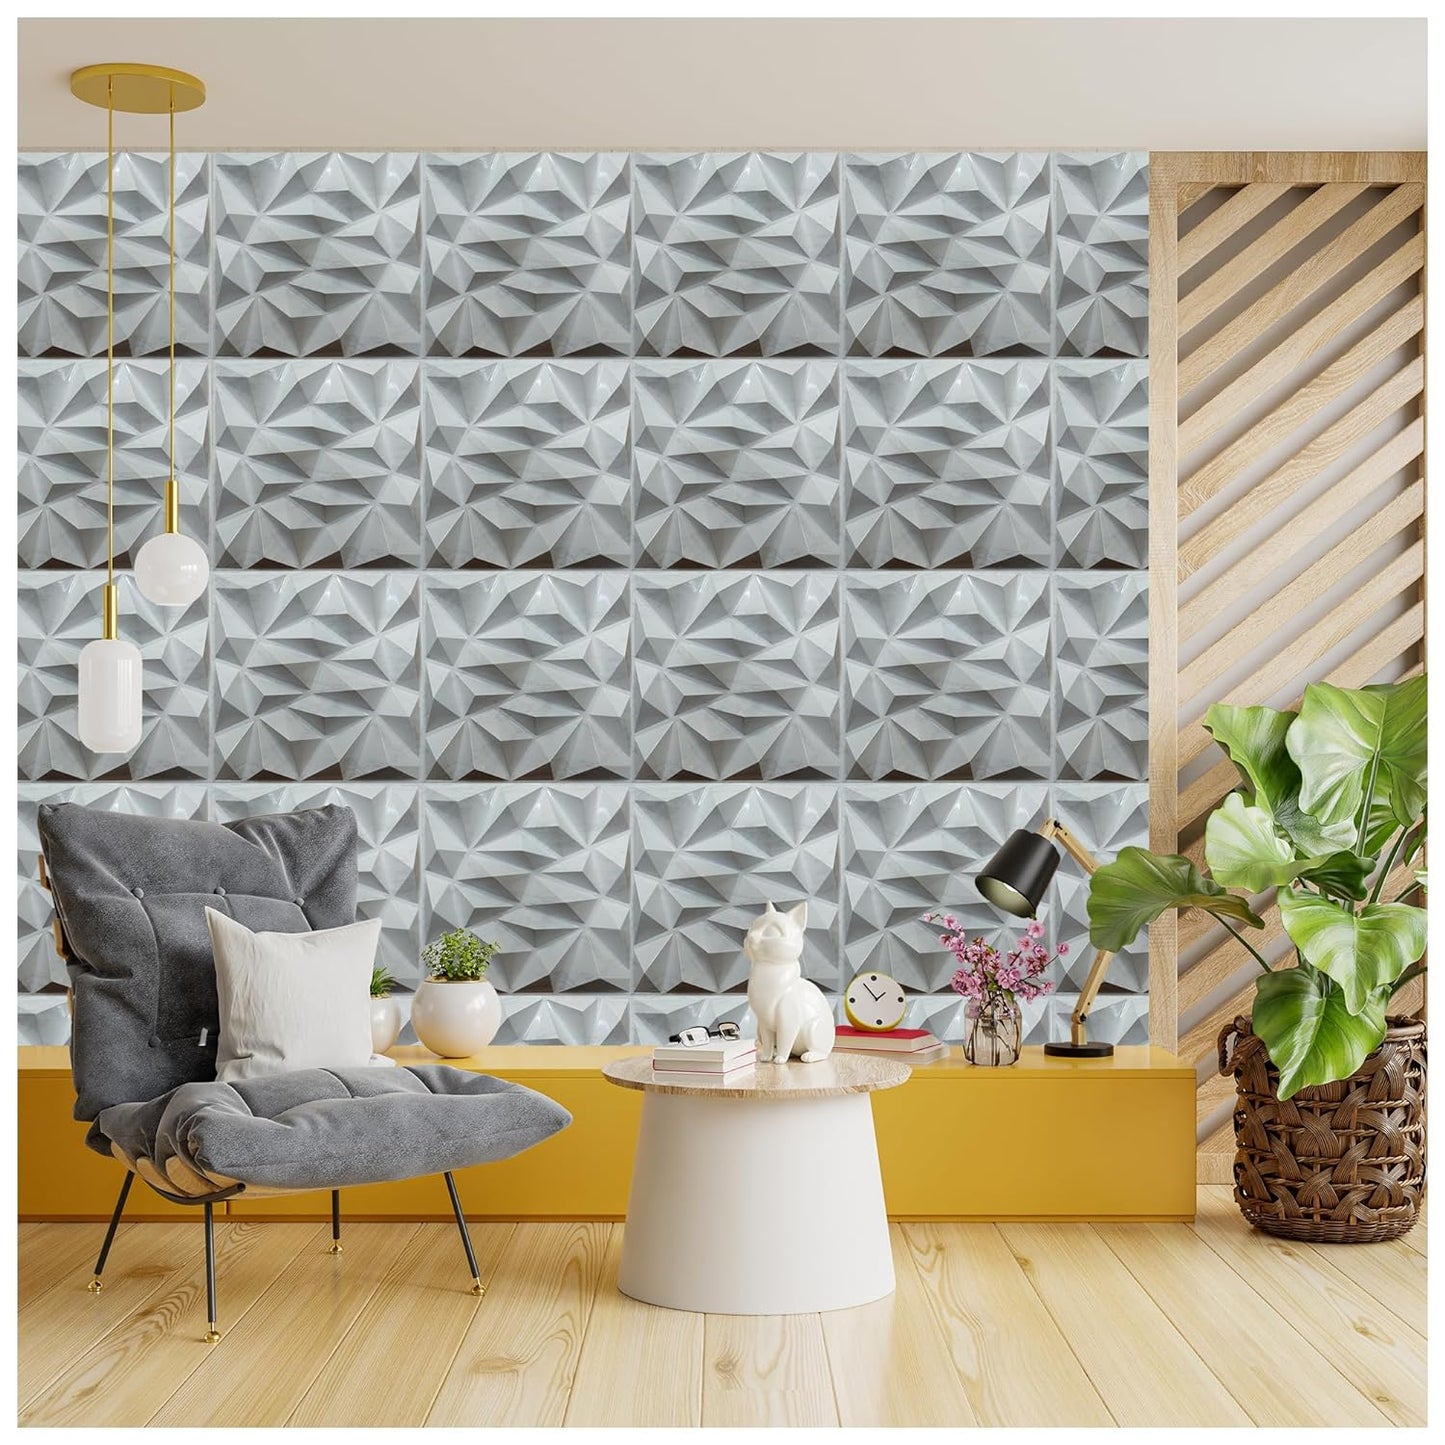 White Marble Color Diamond Design 3D PVC Wall Panels (50 X 50 cm)